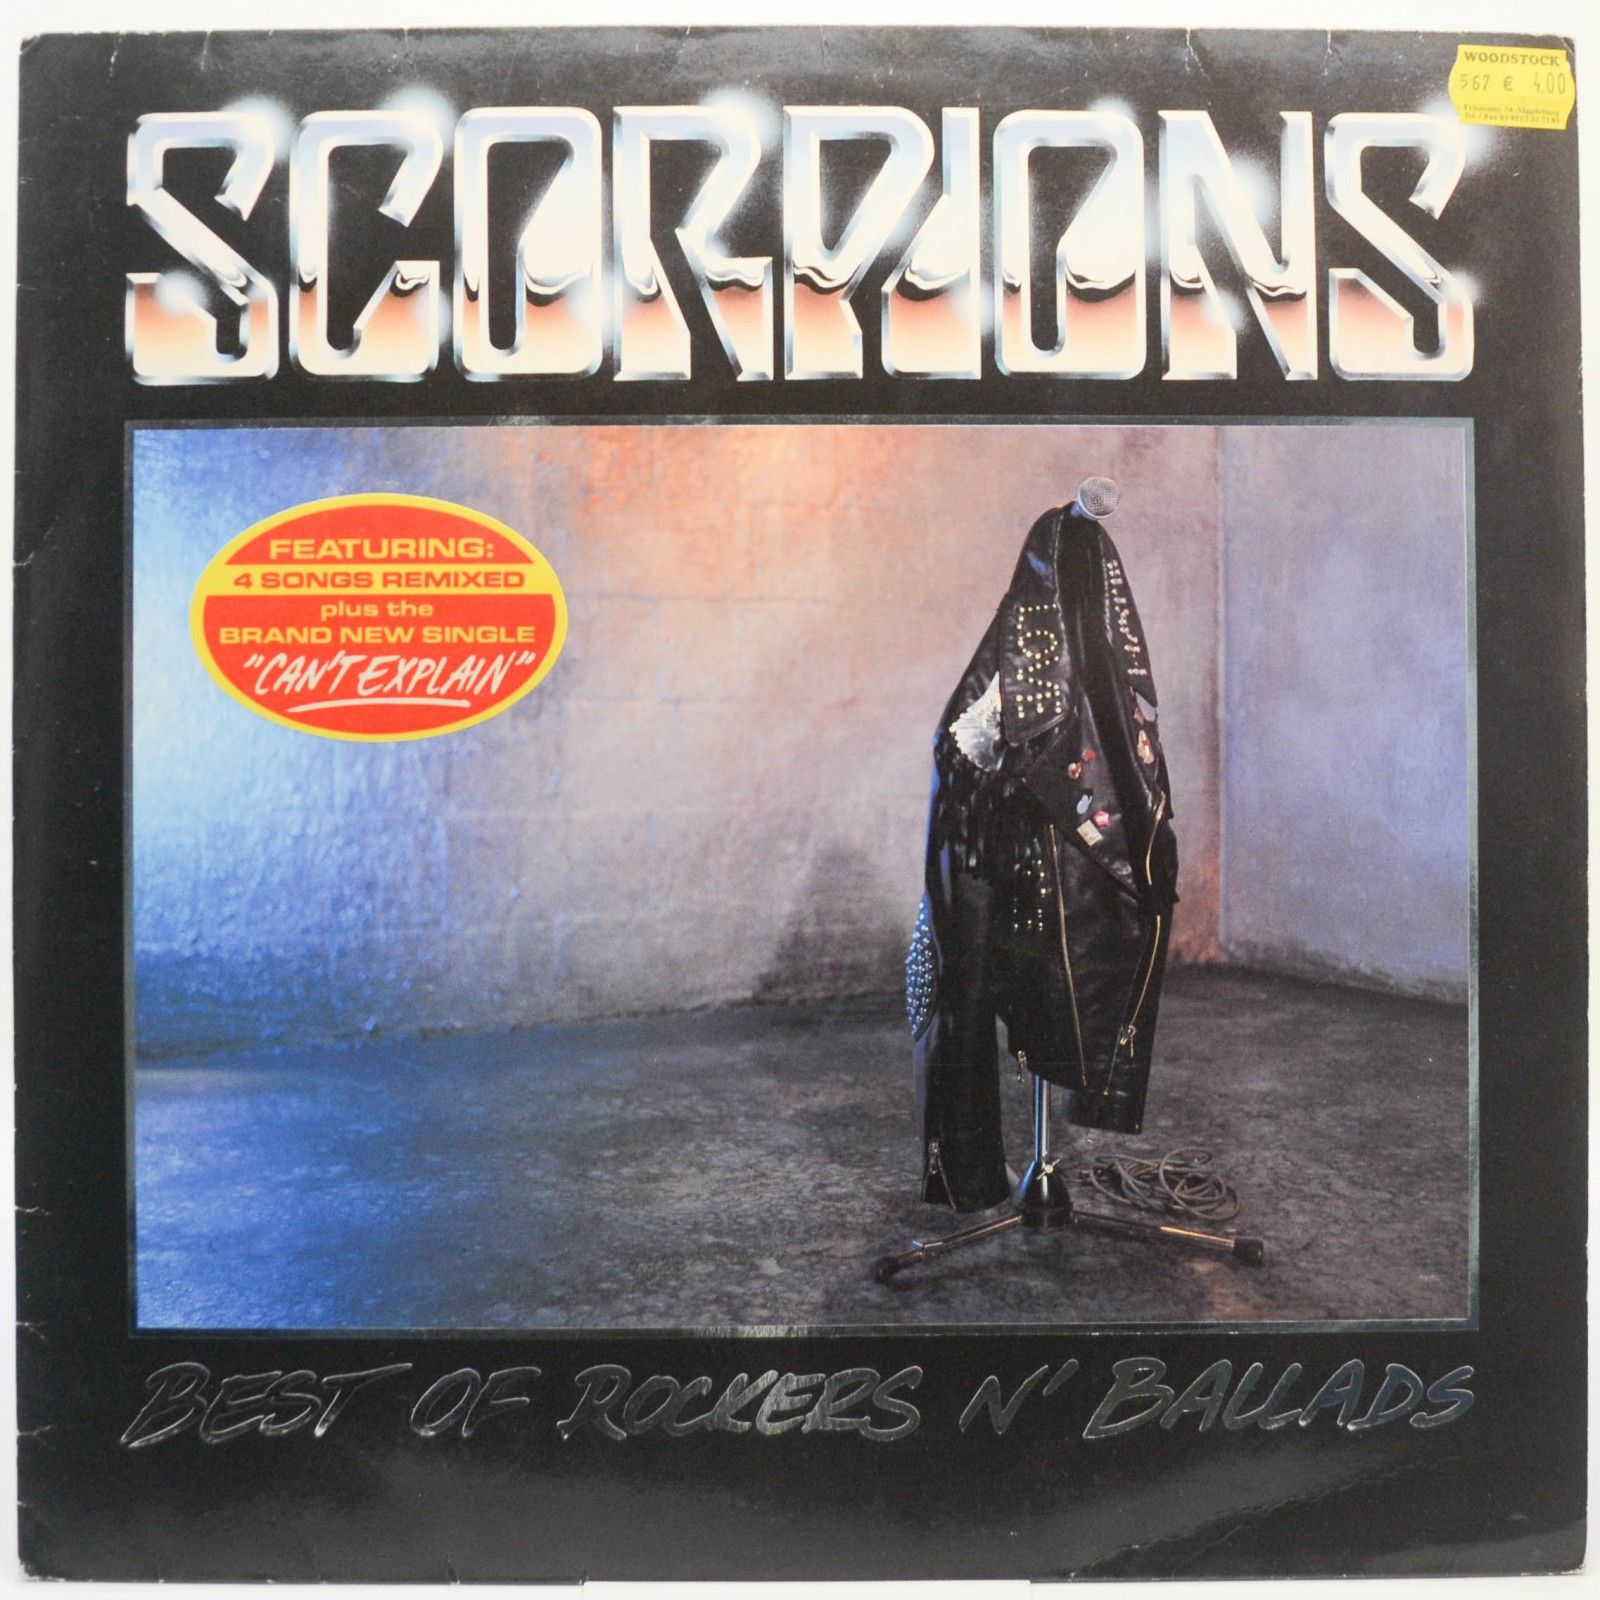 Scorpions — Best Of Rockers 'N' Ballads (1-st, Germany), 1989